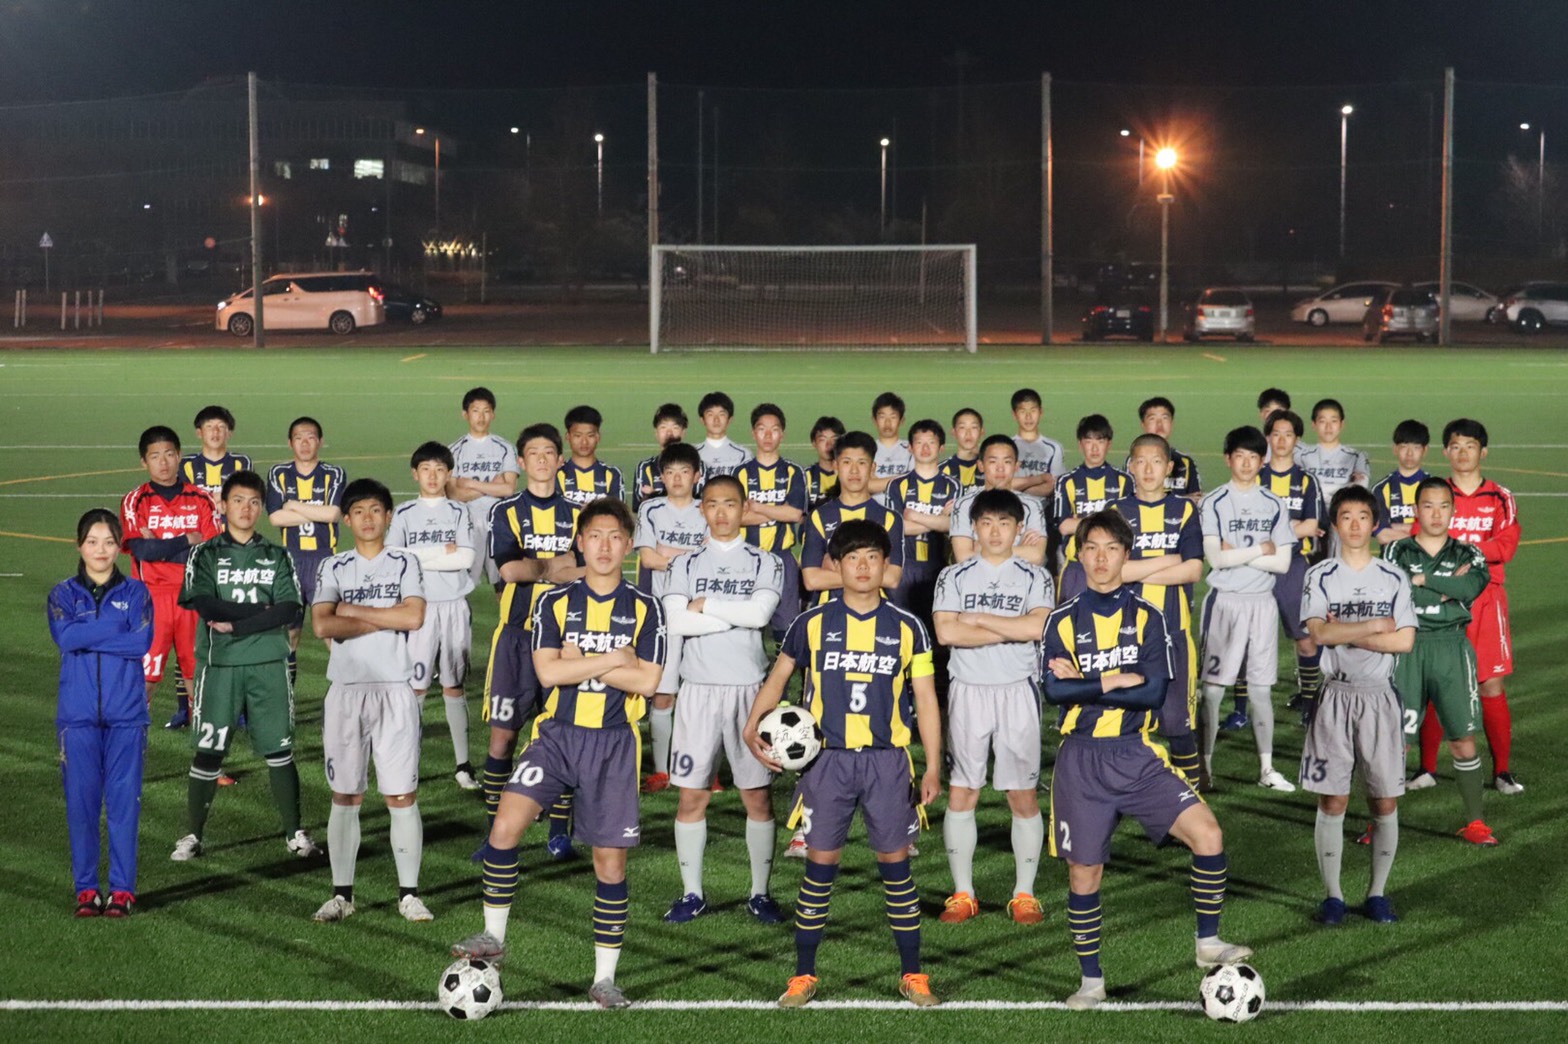 日本航空高校石川 オープンキャンパス7 11 部活動体験 8 7 28開催 21年度 石川 ジュニアサッカーnews